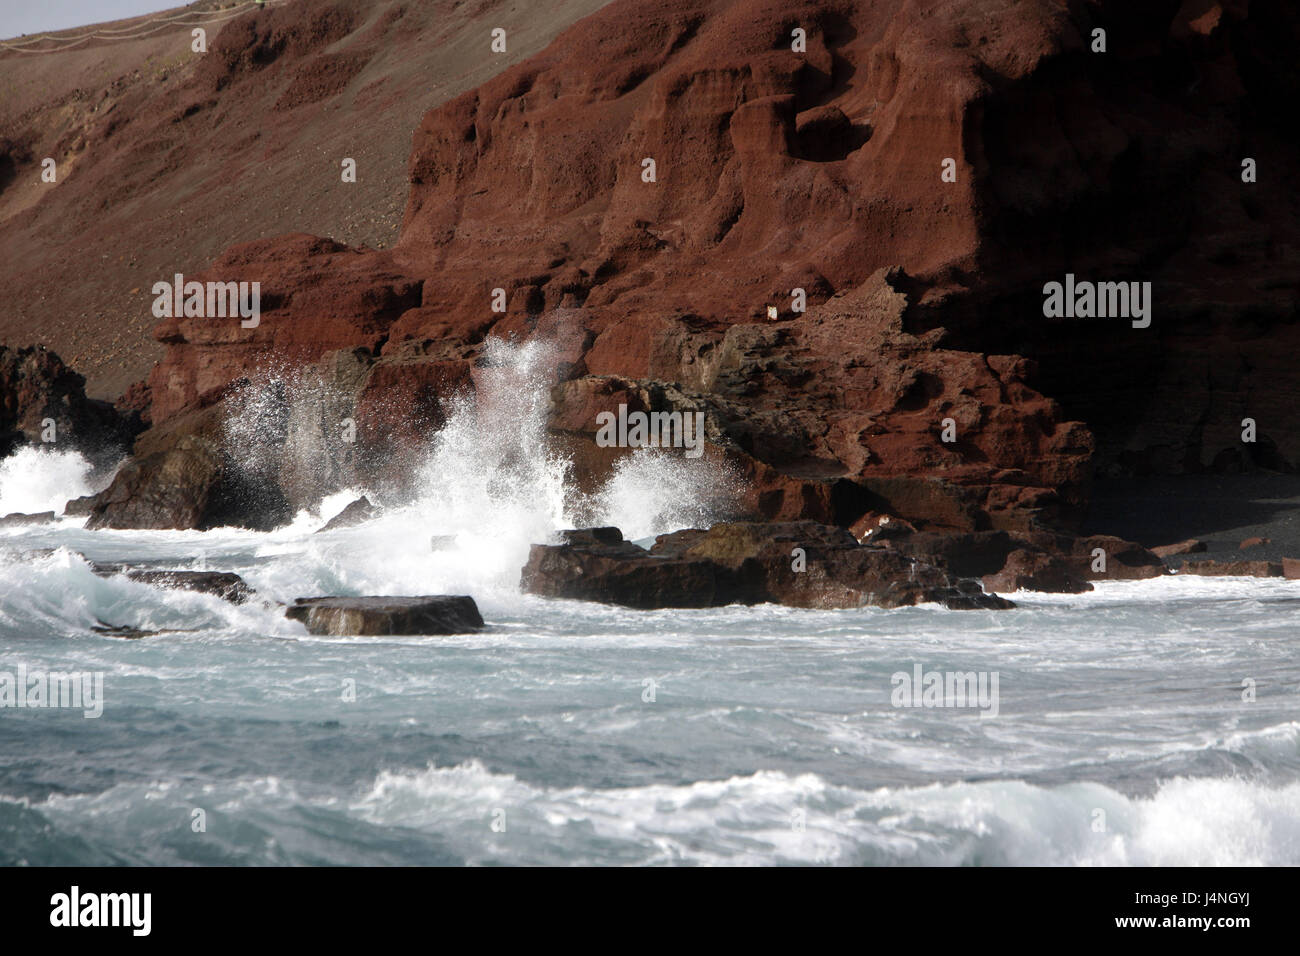 Spagna, Lanzarote, El Golfo, bile costa, surf, Foto Stock